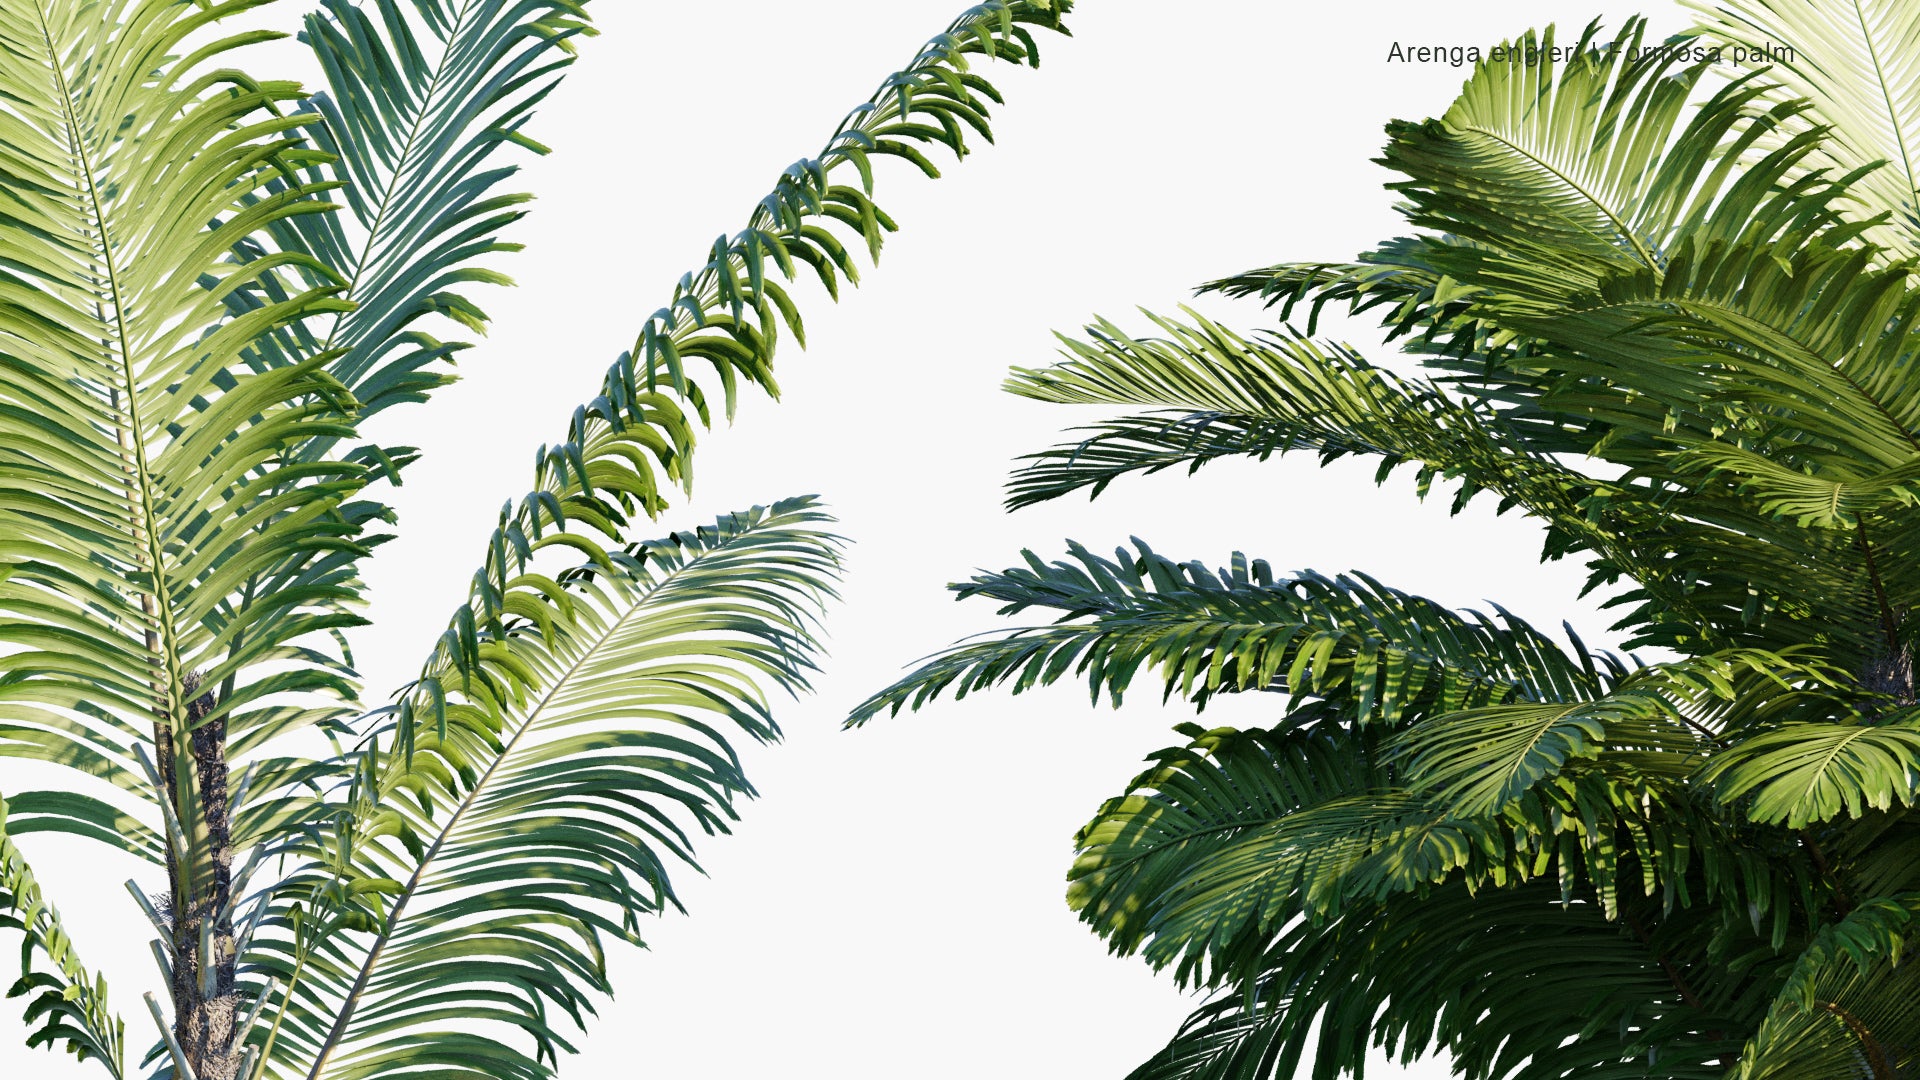 Arenga Engleri - Formosa Palm, Taiwan Sugar Palm, Dwarf Sugar Palm, Taiwan Arenga Palm (3D Model)